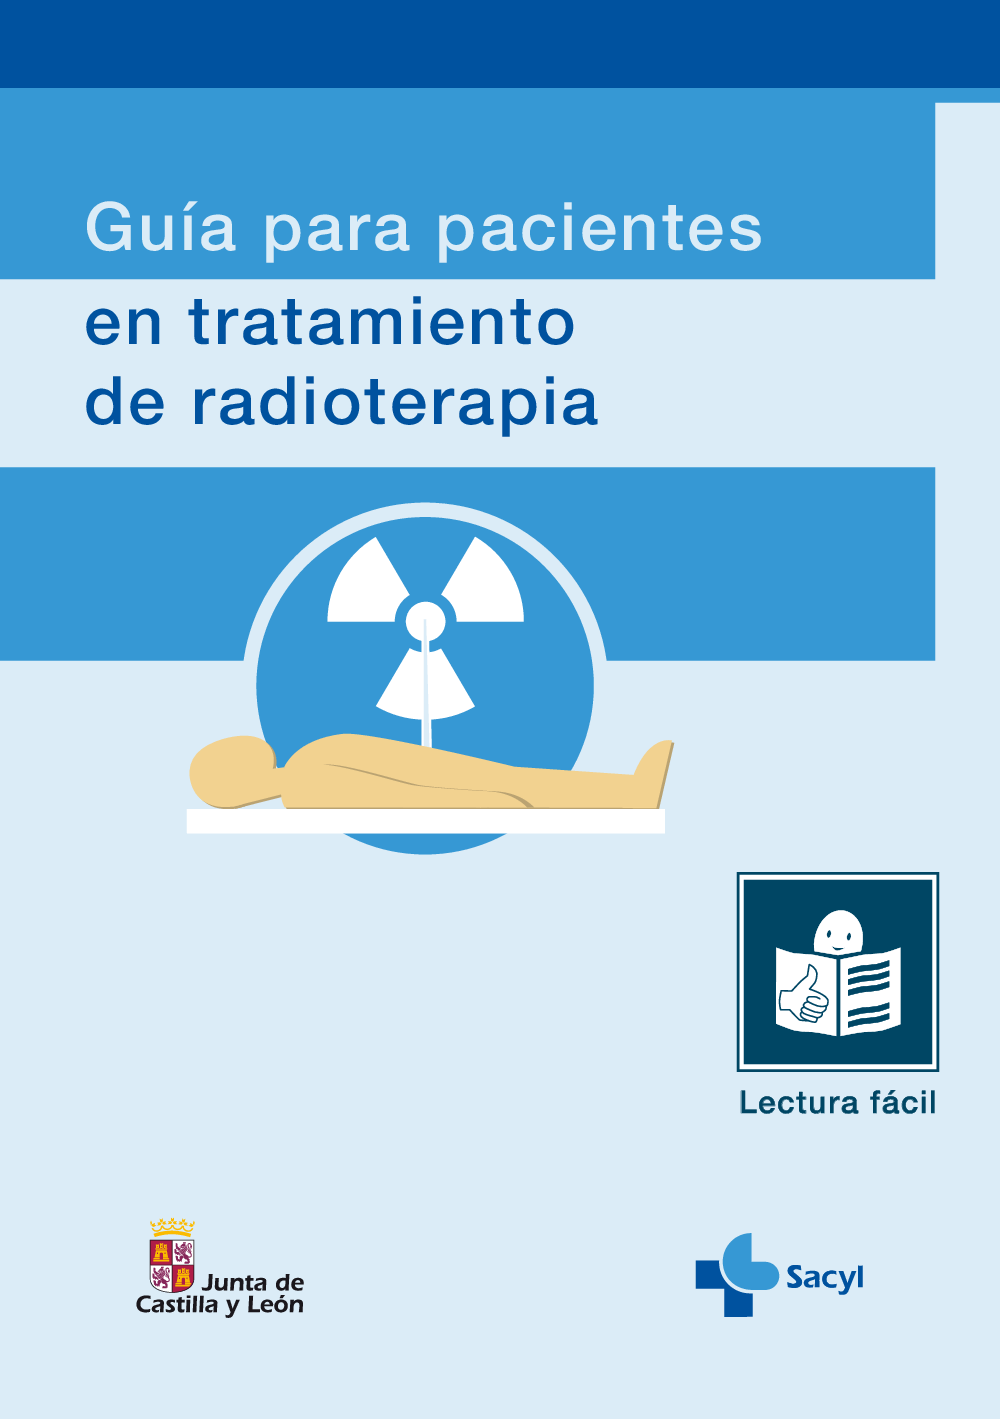 Guía para pacientes en tratamiento de radioterapia en lectura fácil